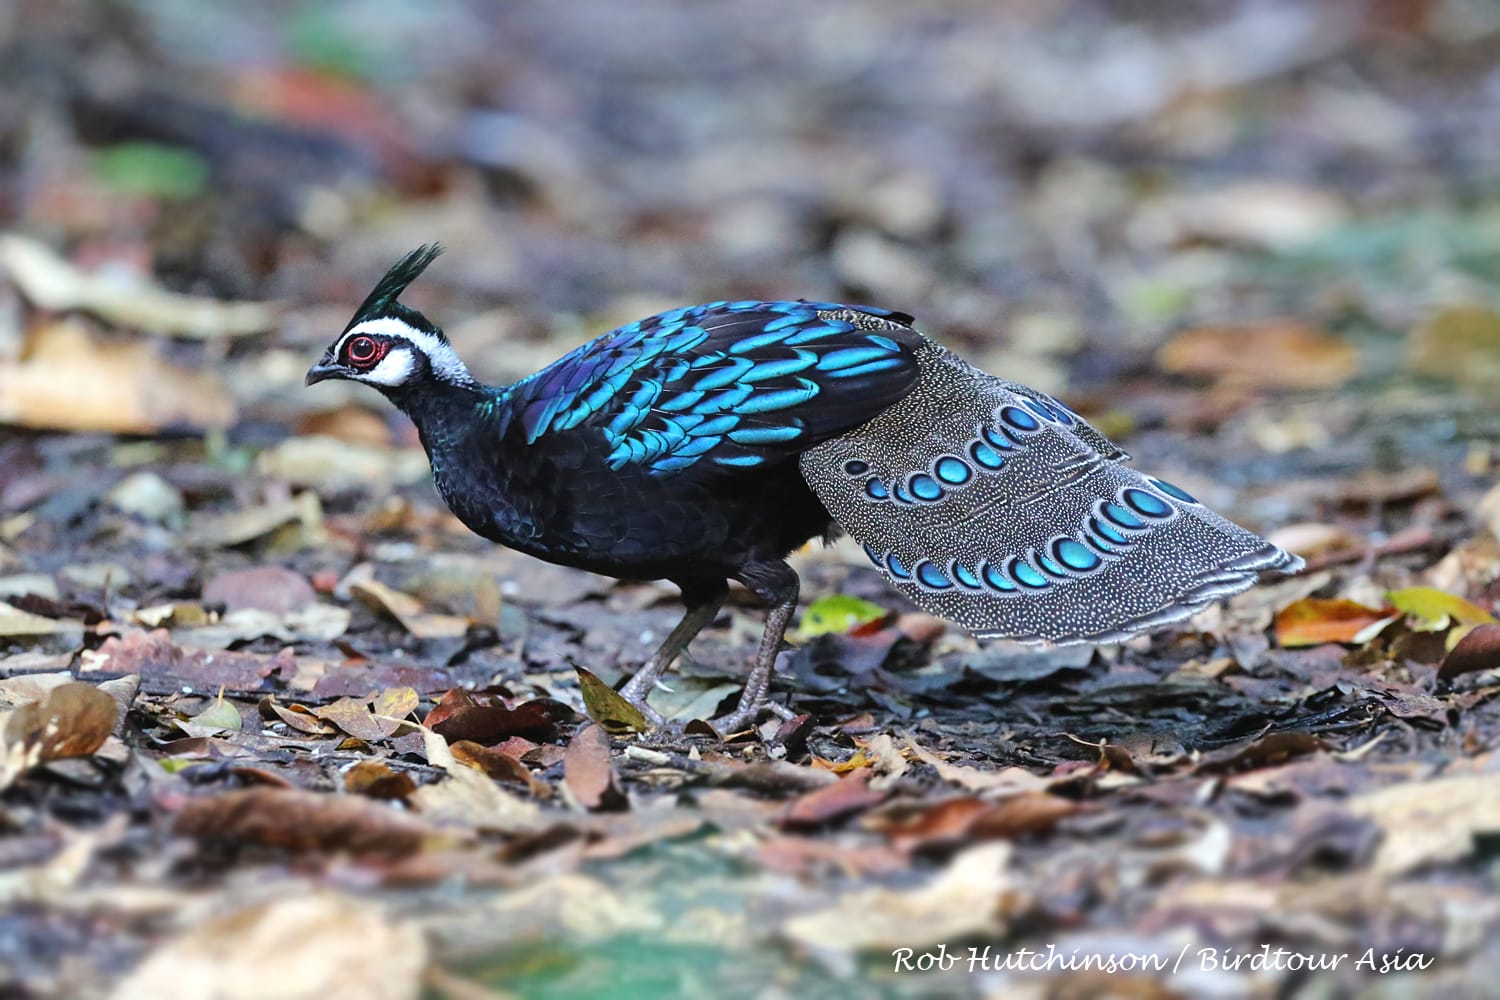 Palawan Peacock Pheasant. Photo by Robert Hutchinson